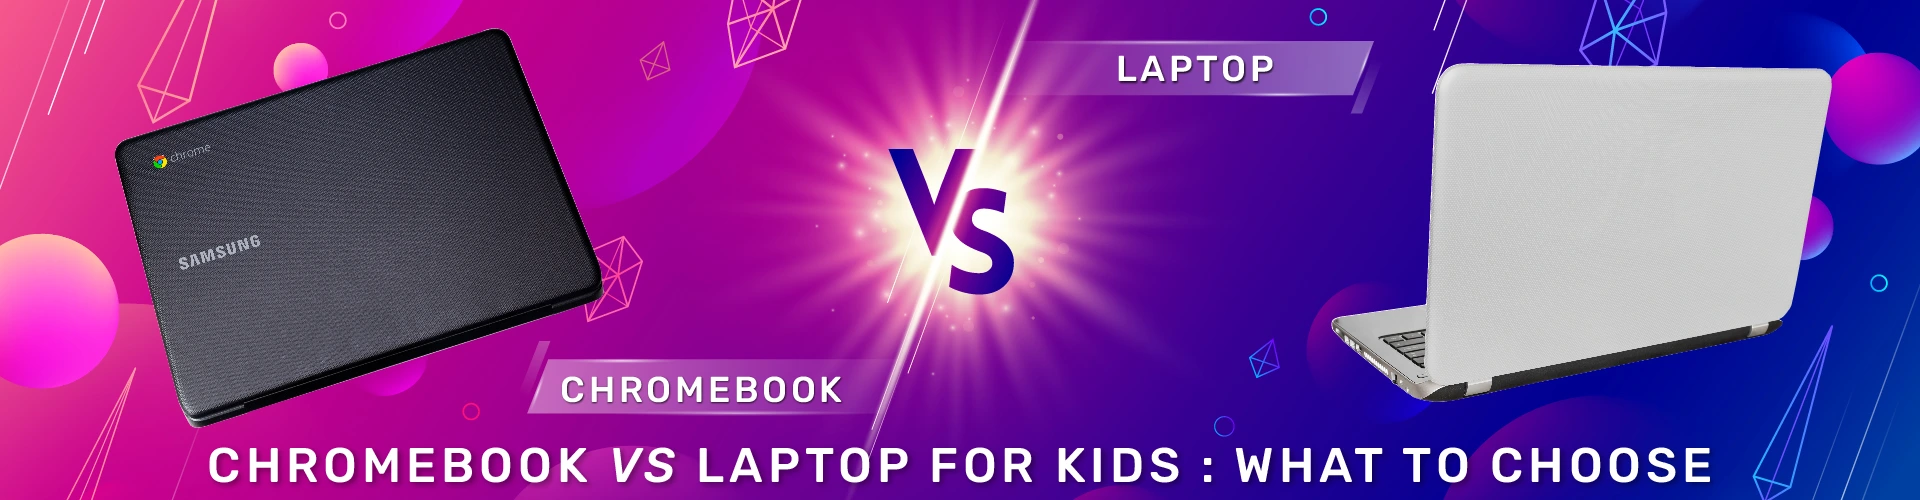 Chromebook vs Laptop for Kids